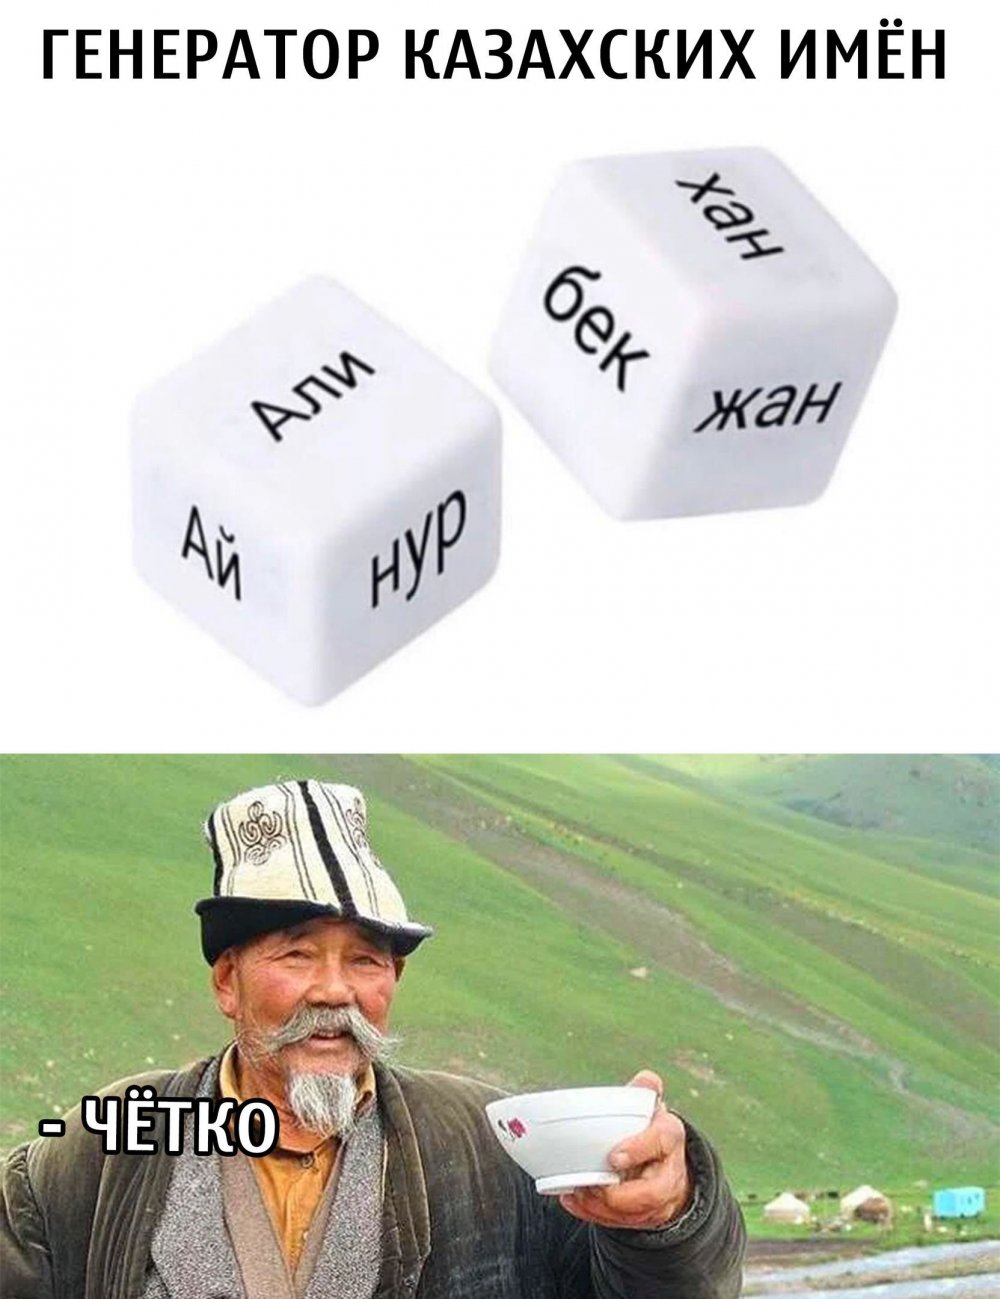 Кубики с казахскими именами